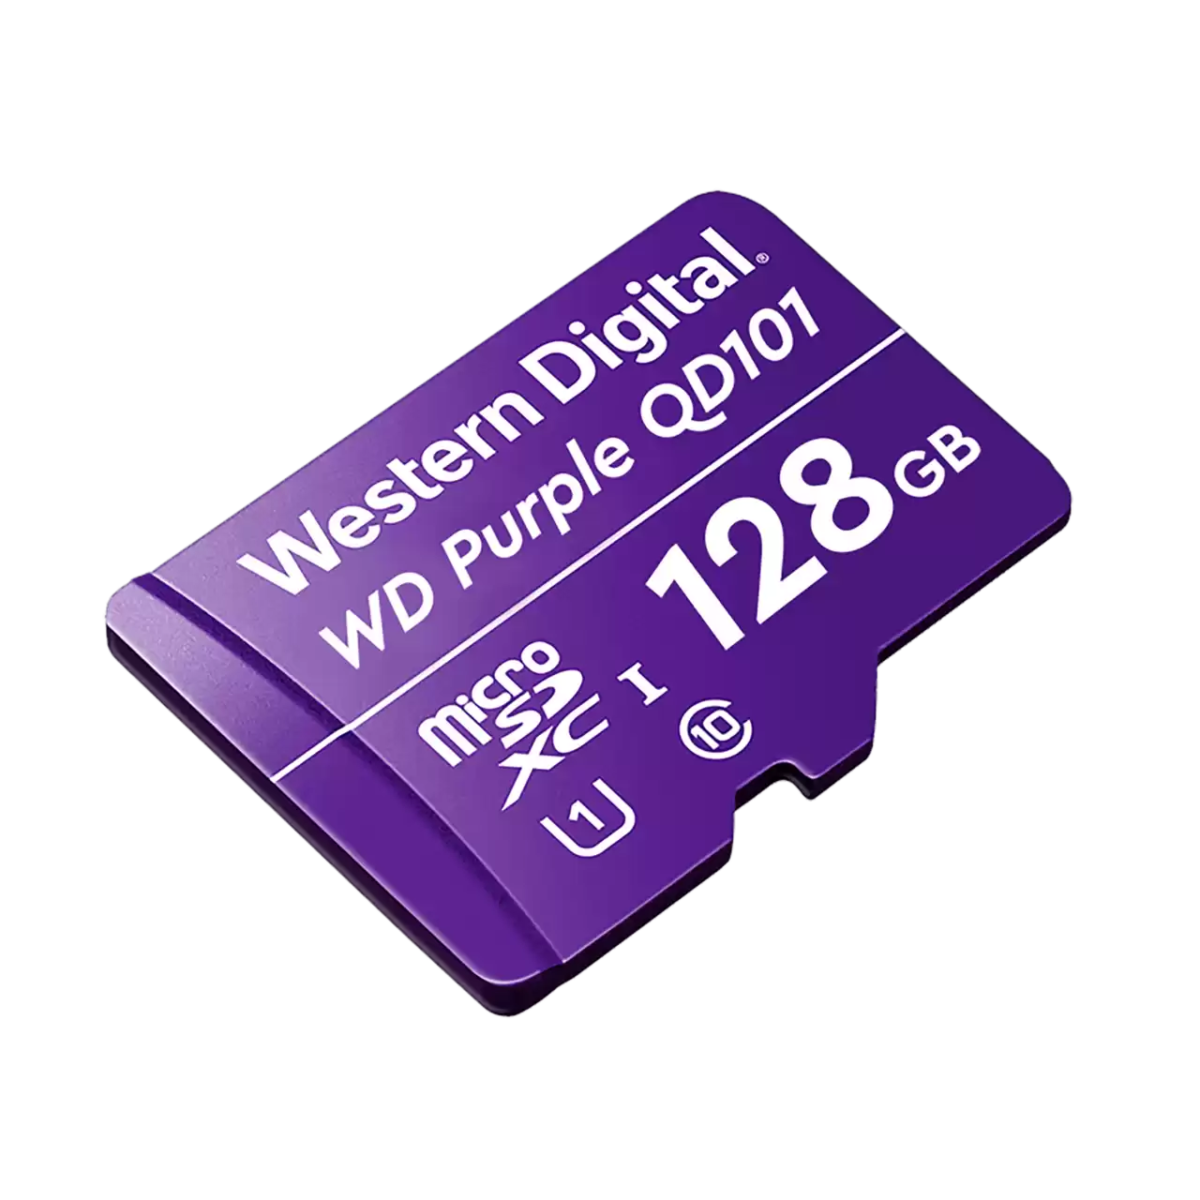 micro sd wd 247 128gb purple